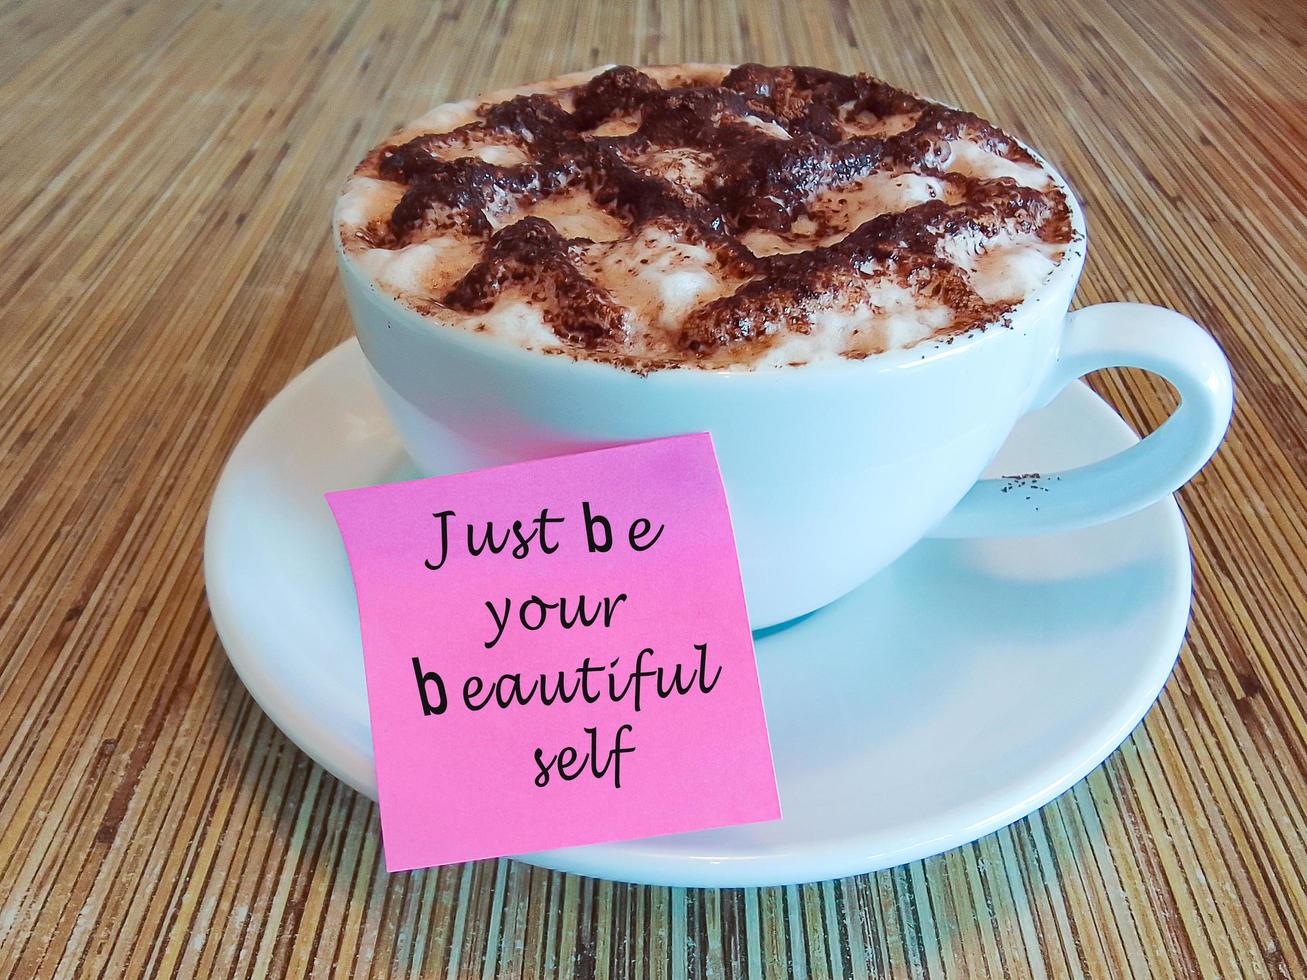 citação motivacional e inspiradora em uma nota rosa na xícara de café na mesa de madeira. foto